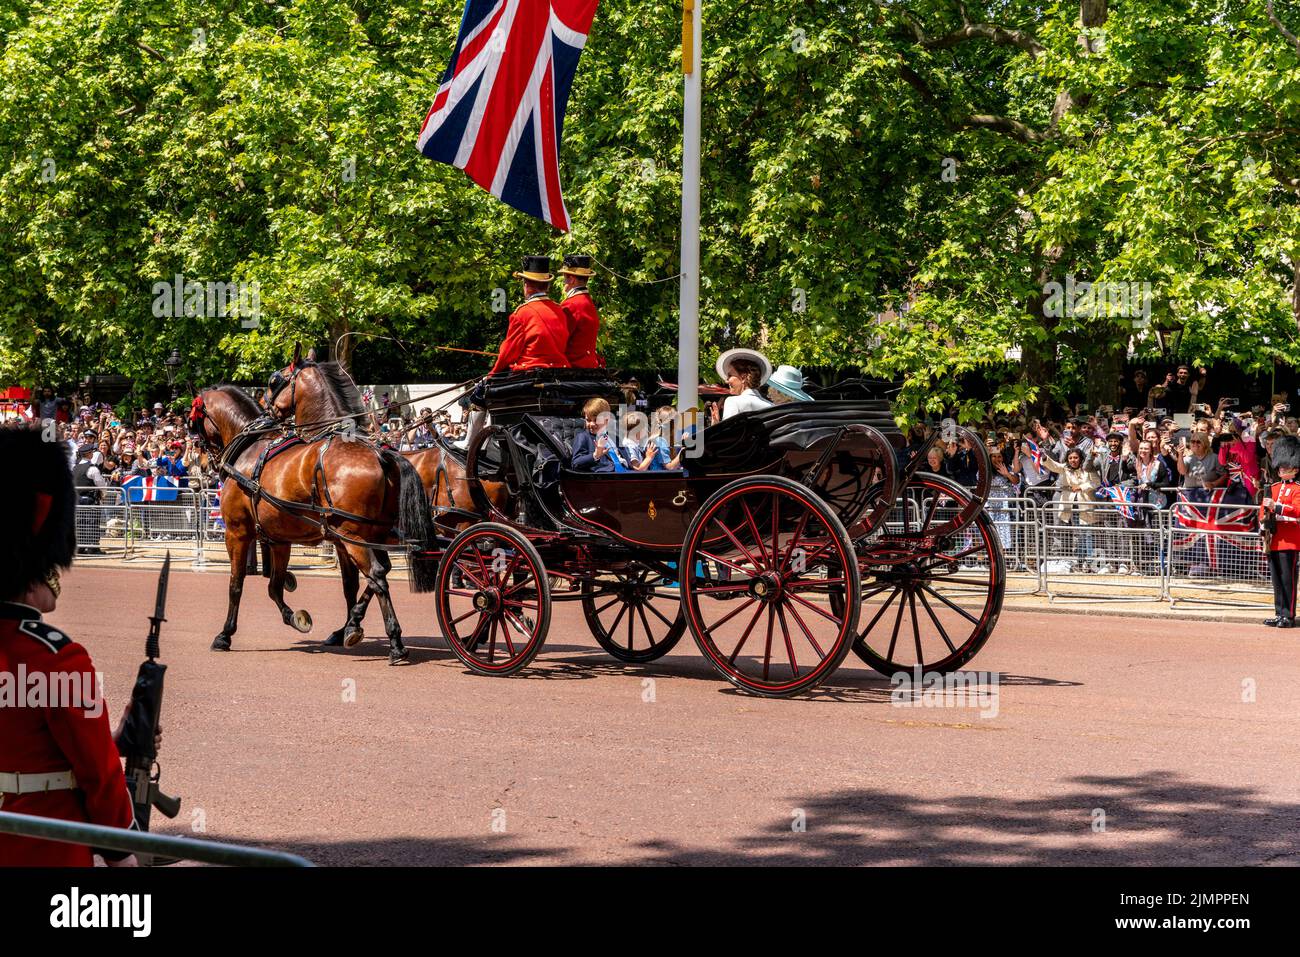 Los miembros de la familia real británica regresan a lo largo del centro comercial en un carruaje tirado por caballos después de asistir a la ceremonia de Trooping the Colour, Londres, Reino Unido. Foto de stock